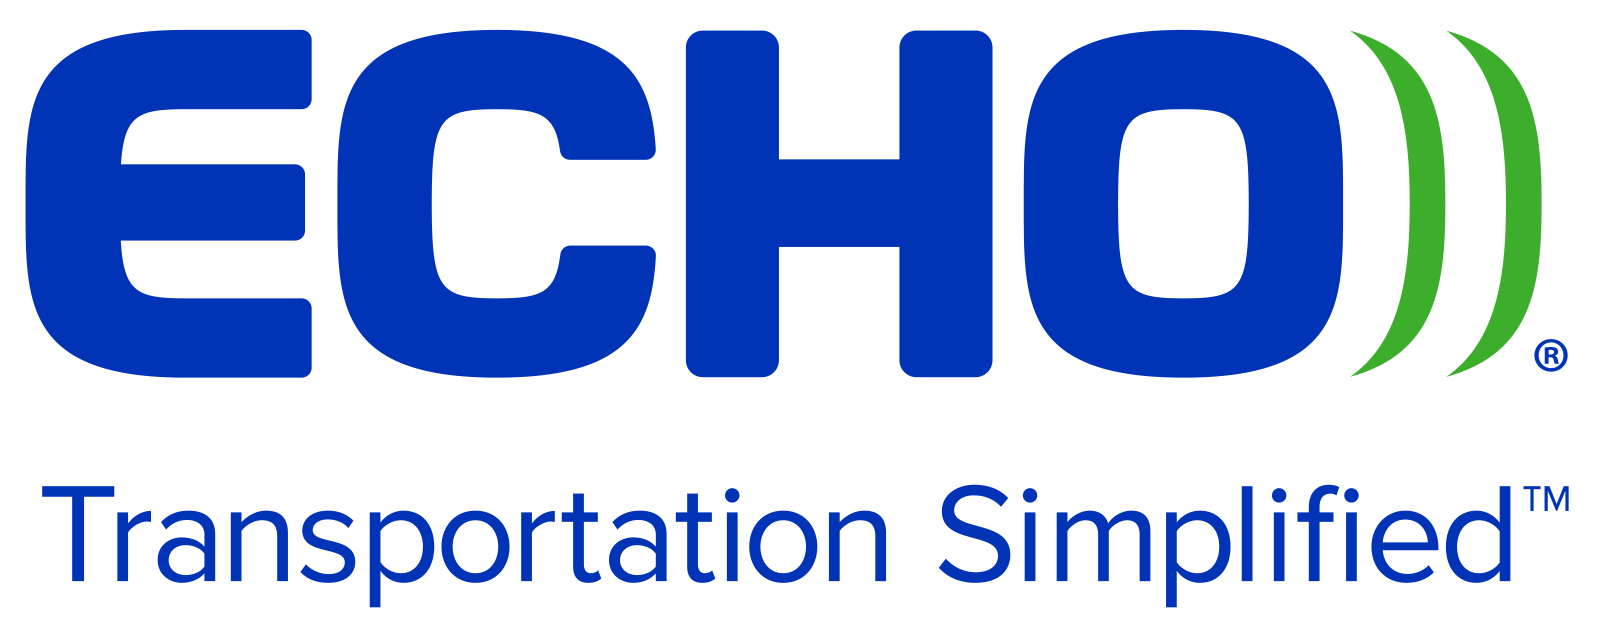 Echo Global Logistics, Inc. logo